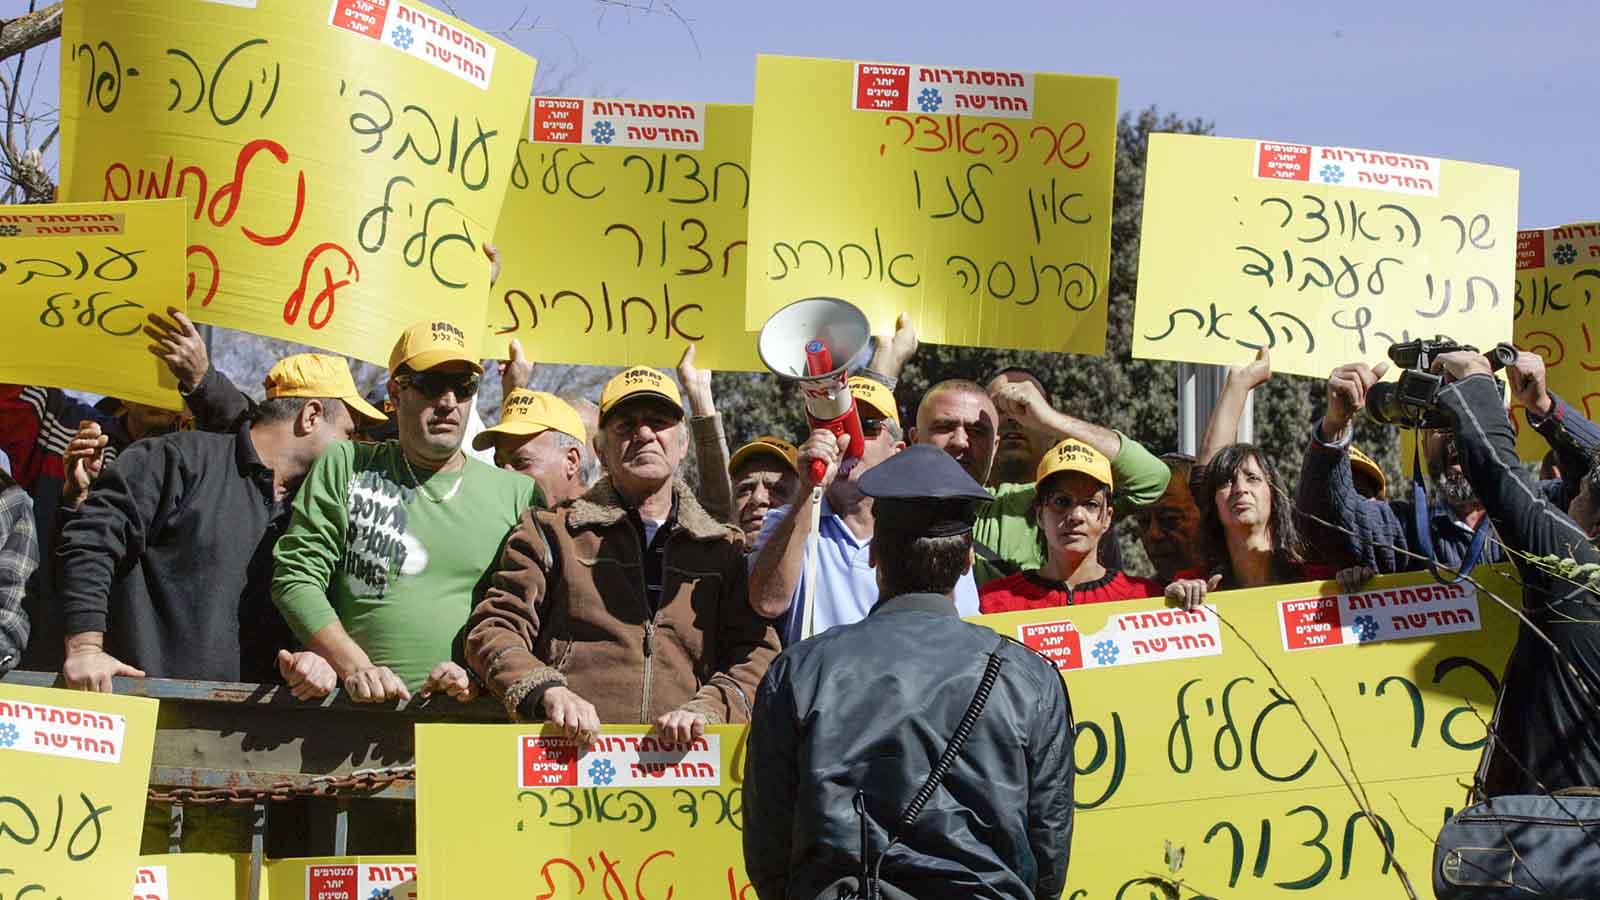 הפגנה של עובדי פרי גליל עם ההסתדרות מול המפעל המועמד לסגירה, 2009 (צילום: יוסי זמיר / פלאש 90).